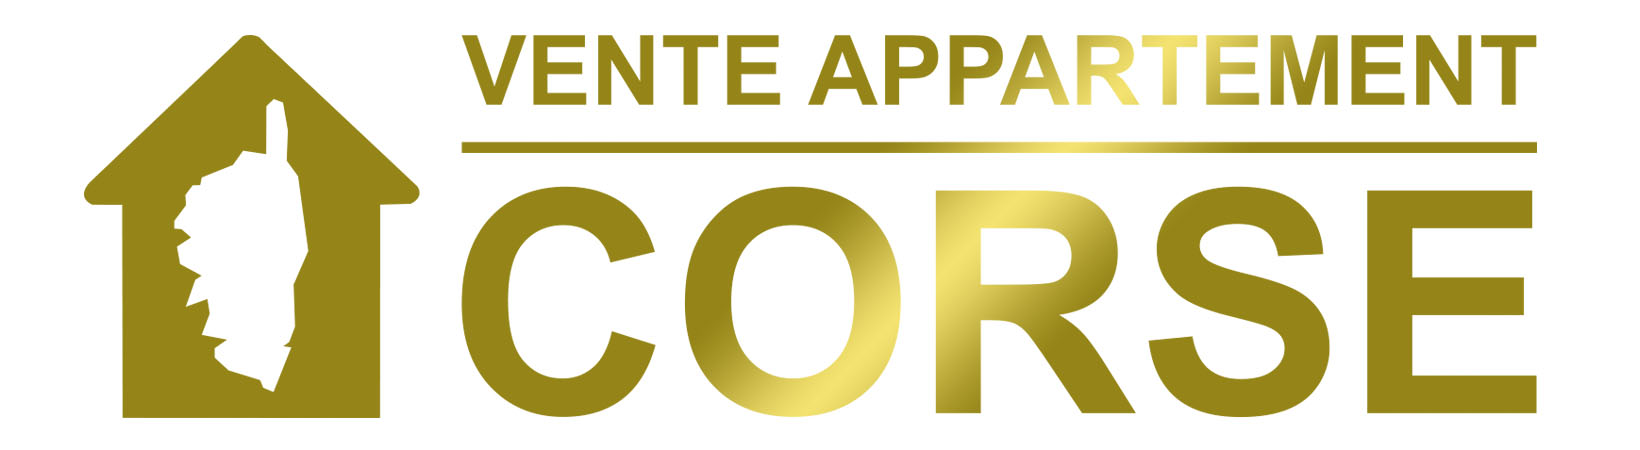 Vente appartement Corse Logo